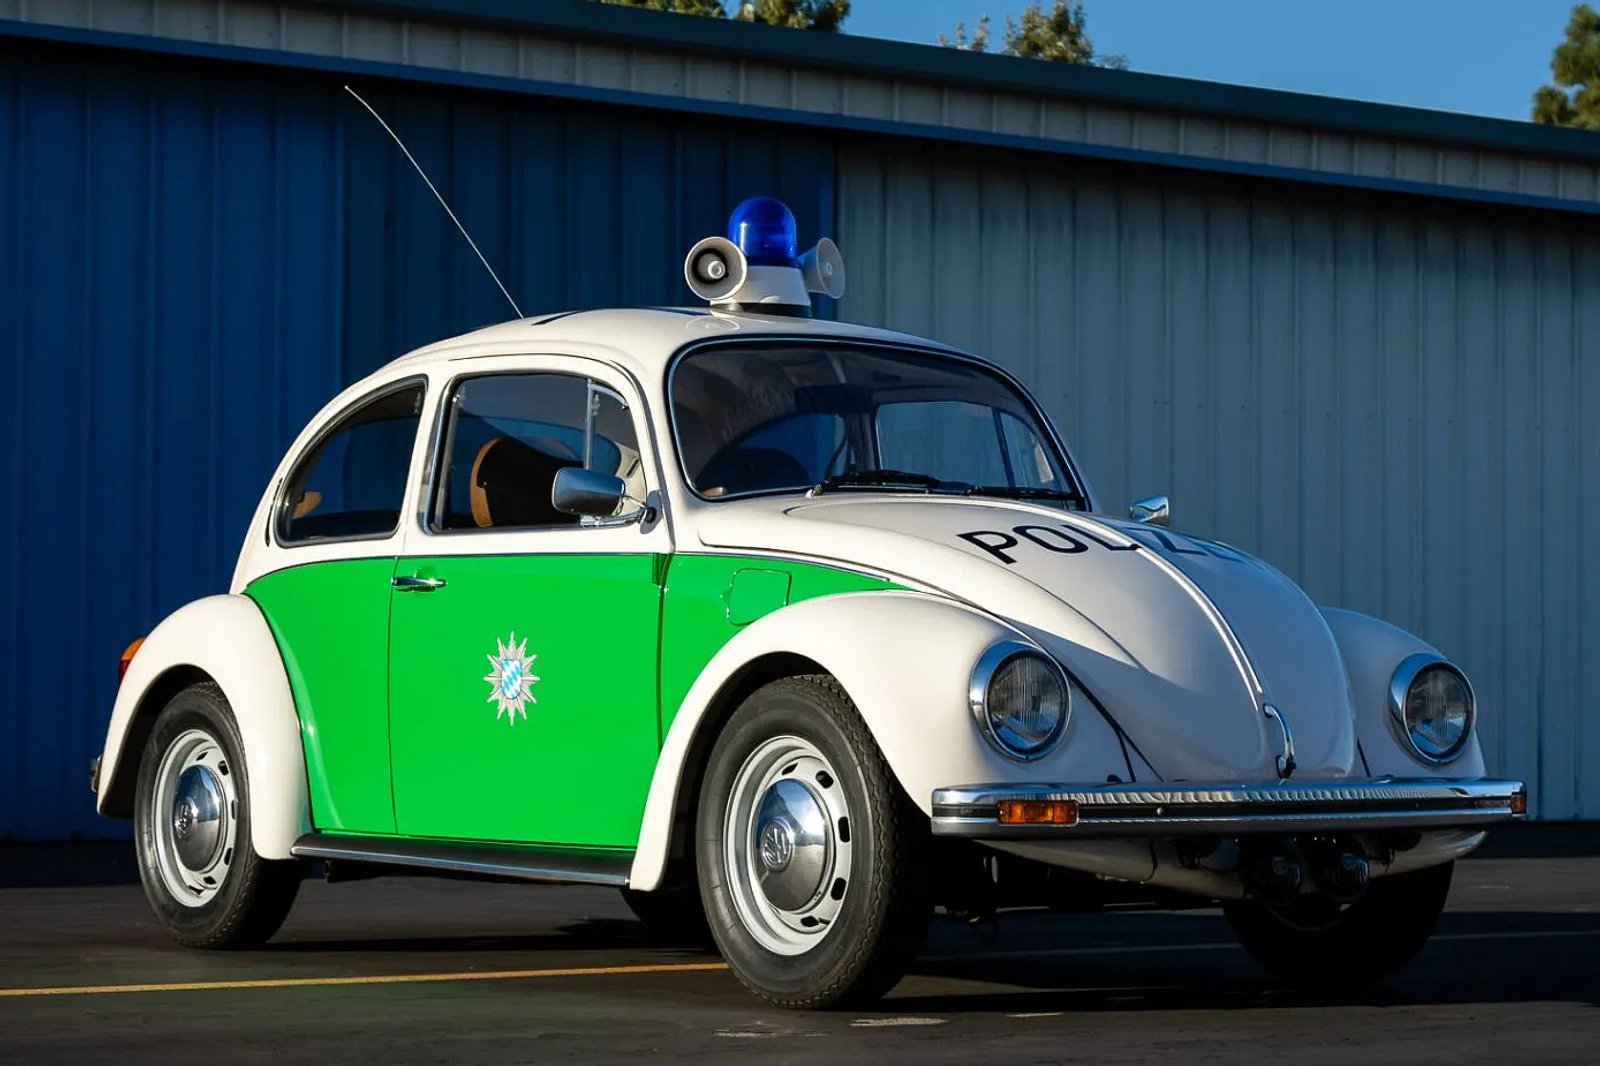 1979 Volkswagen Beetle Police Car Is Criminally Cute